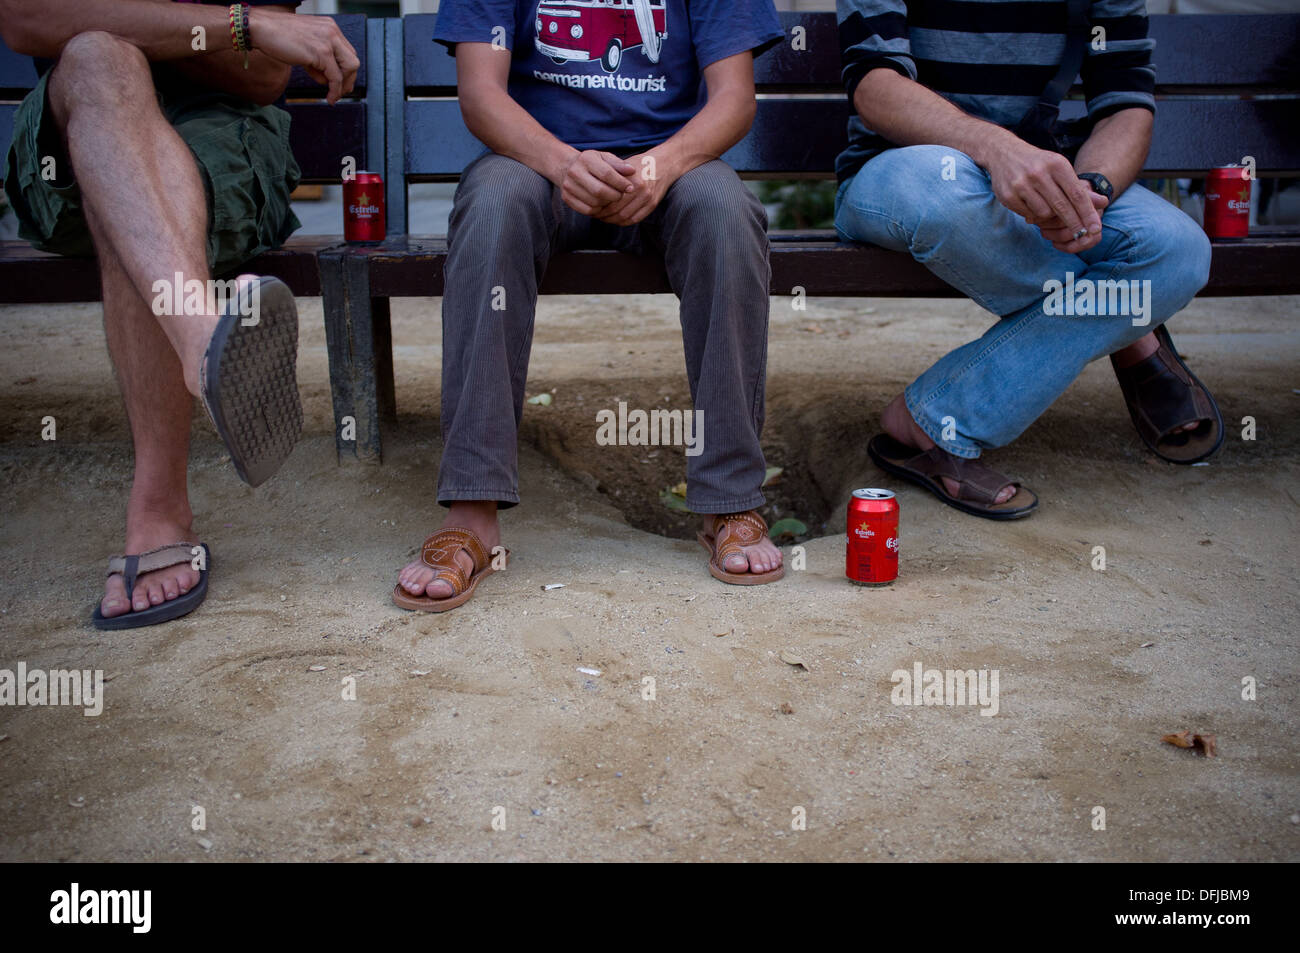 Trois jeunes hommes assis sur un banc et boire de la bière à Barcelone, Espagne. Banque D'Images